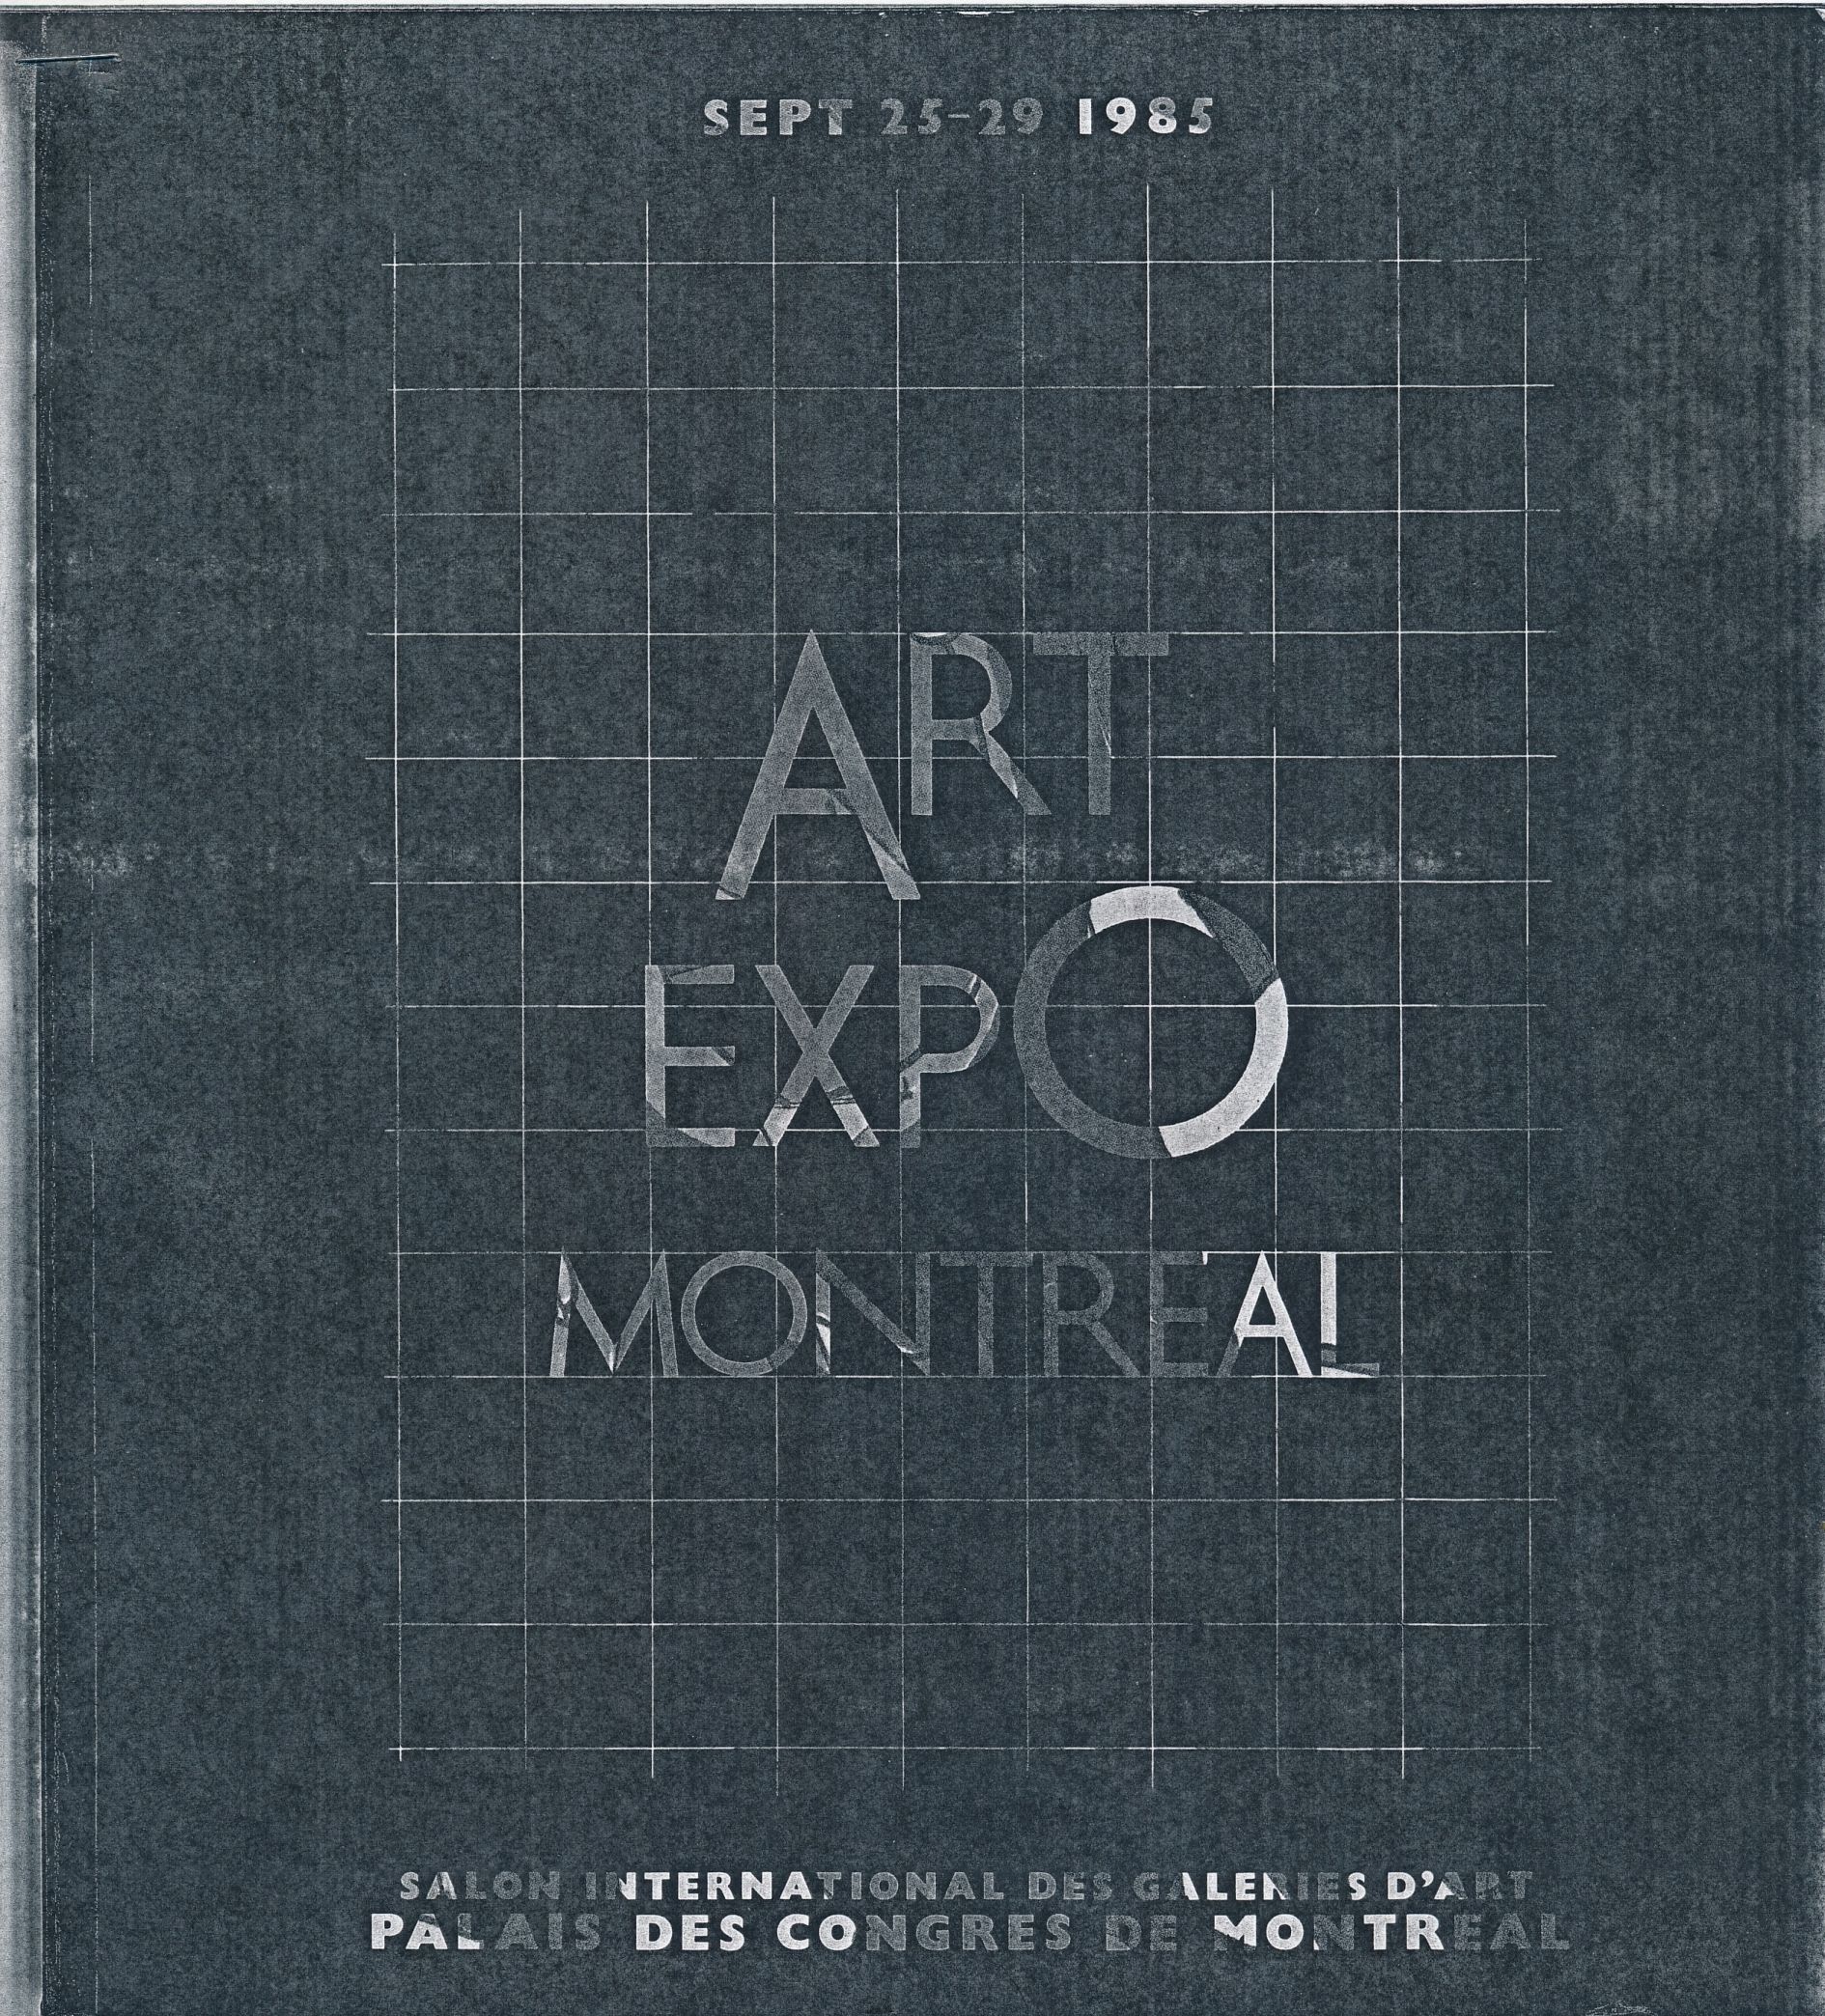 Couverture du catalogue d’exposition Art Expo Montréal. Salon international des galeries d’art, 1985.